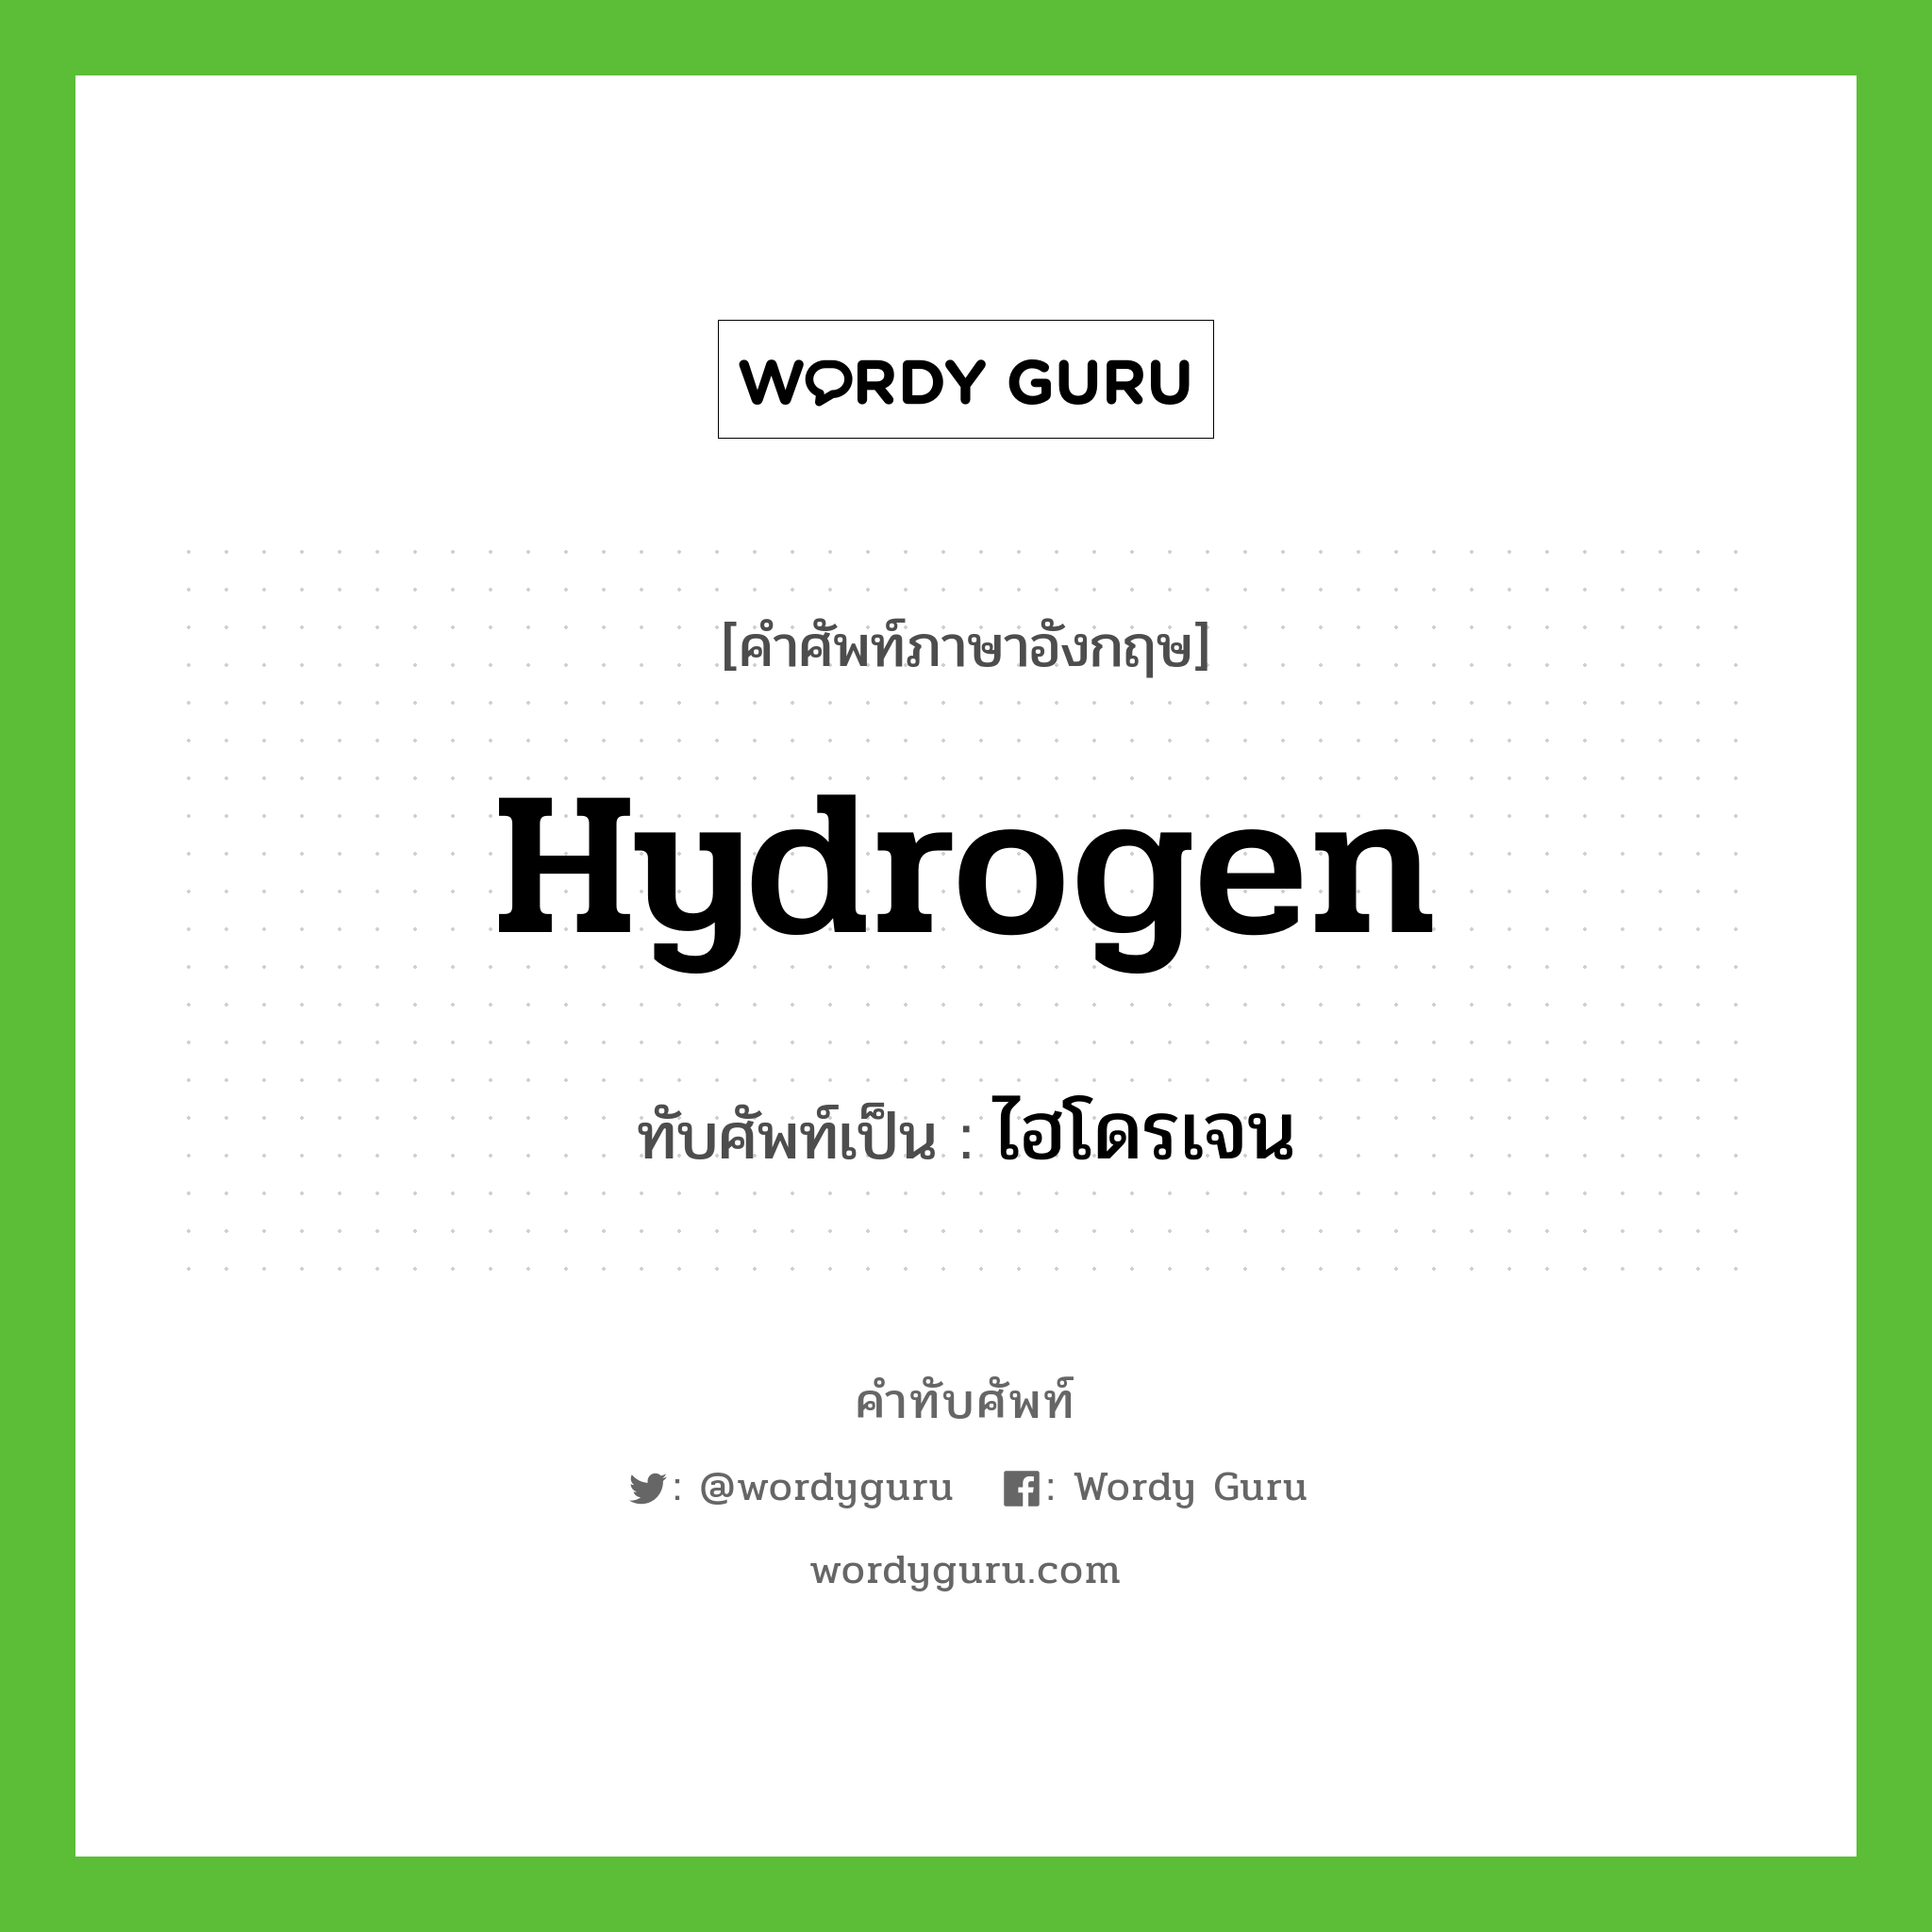 ไฮโดรเจน เขียนอย่างไร?, คำศัพท์ภาษาอังกฤษ ไฮโดรเจน ทับศัพท์เป็น hydrogen